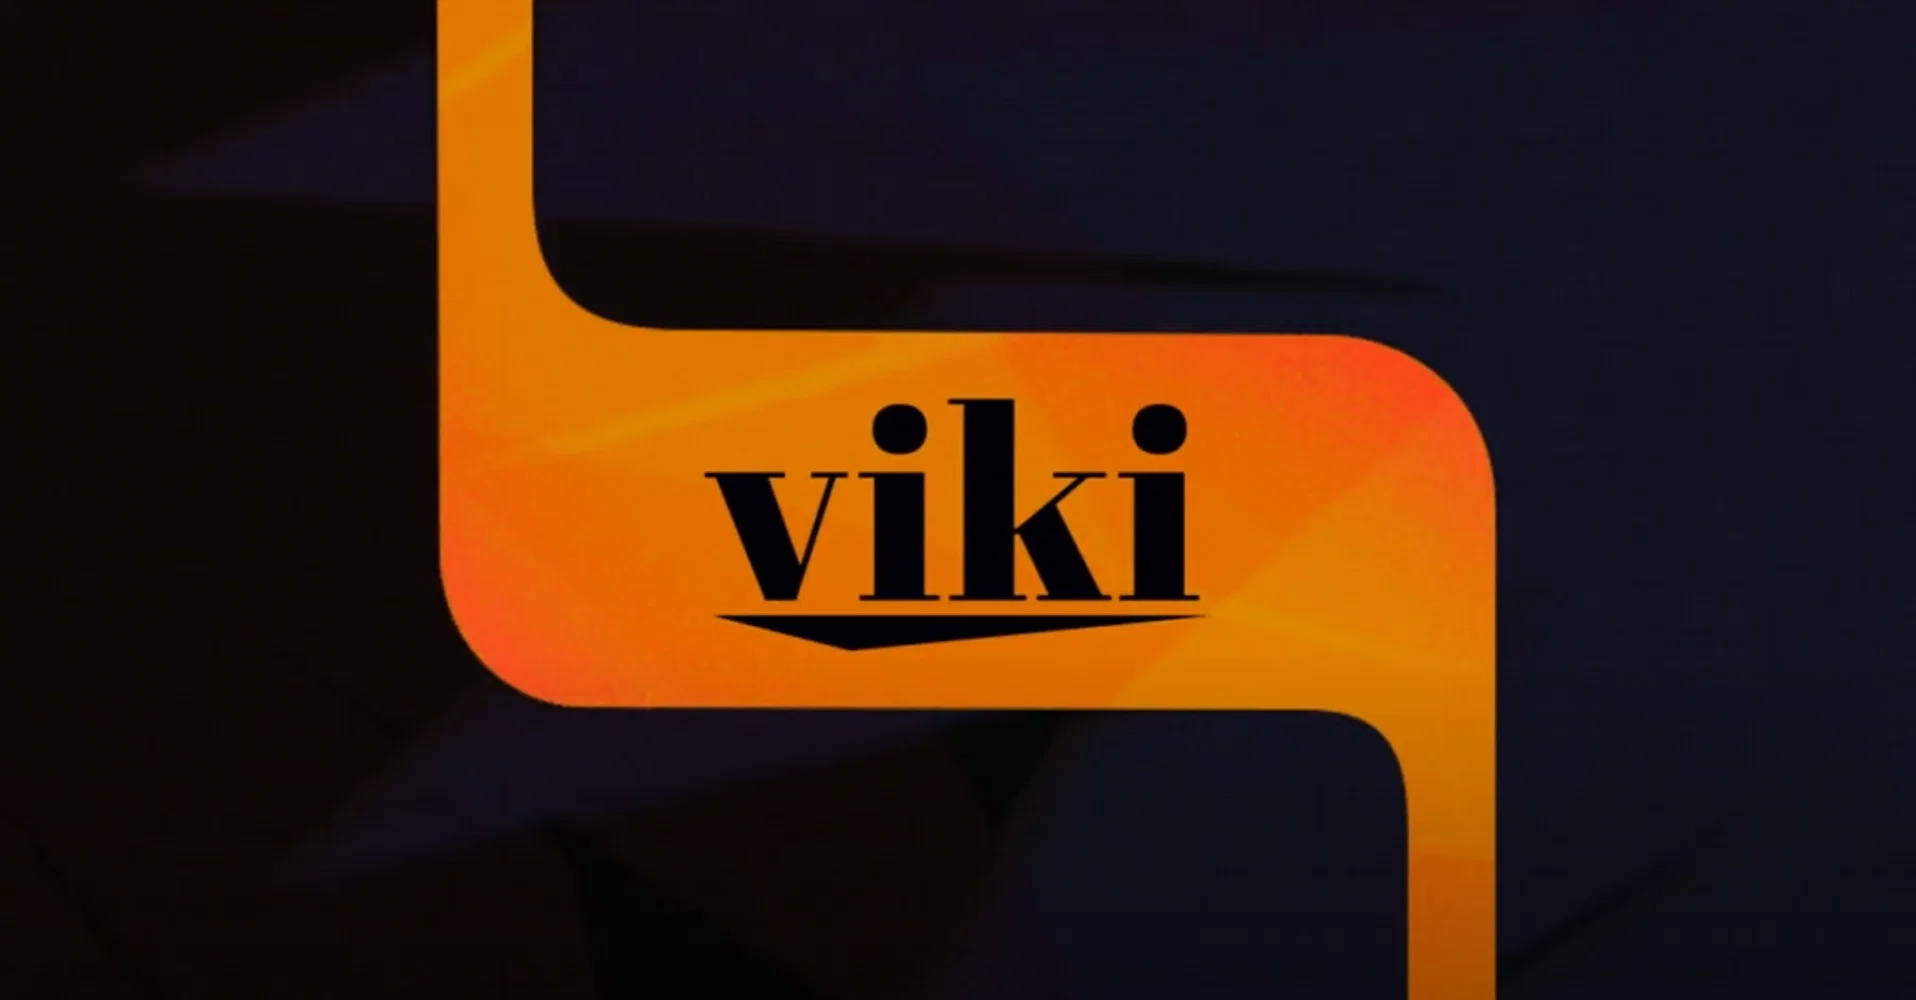 Yellow Swipe, "Viki" Title, Dark Background